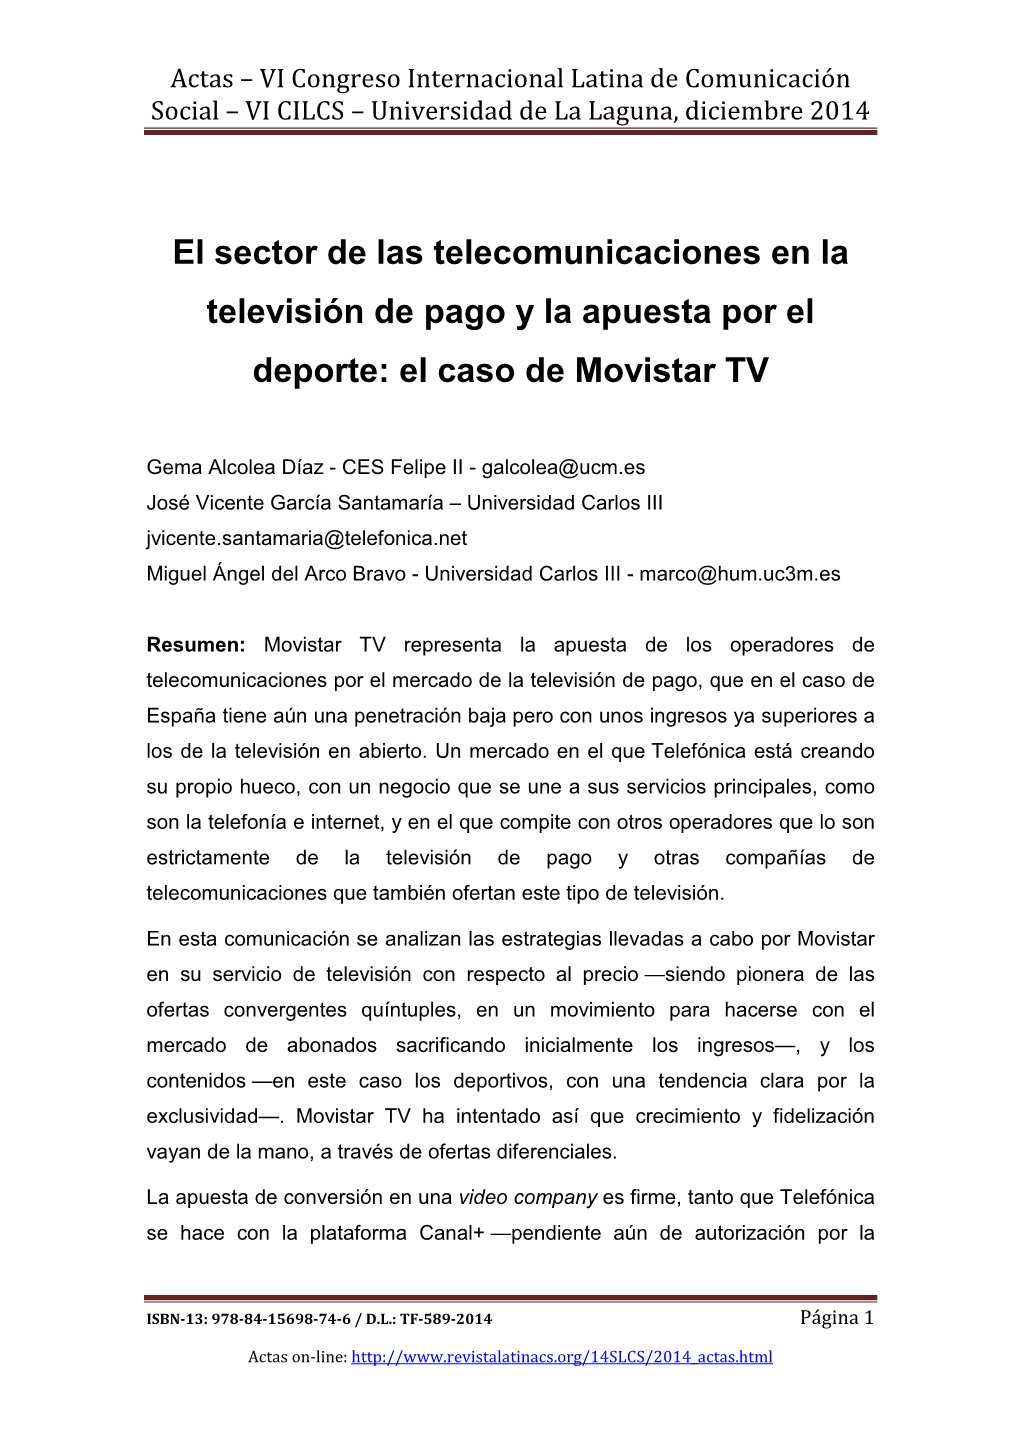 El Sector De Las Telecomunicaciones En La Televisión De Pago Y La Apuesta Por El Deporte: El Caso De Movistar TV